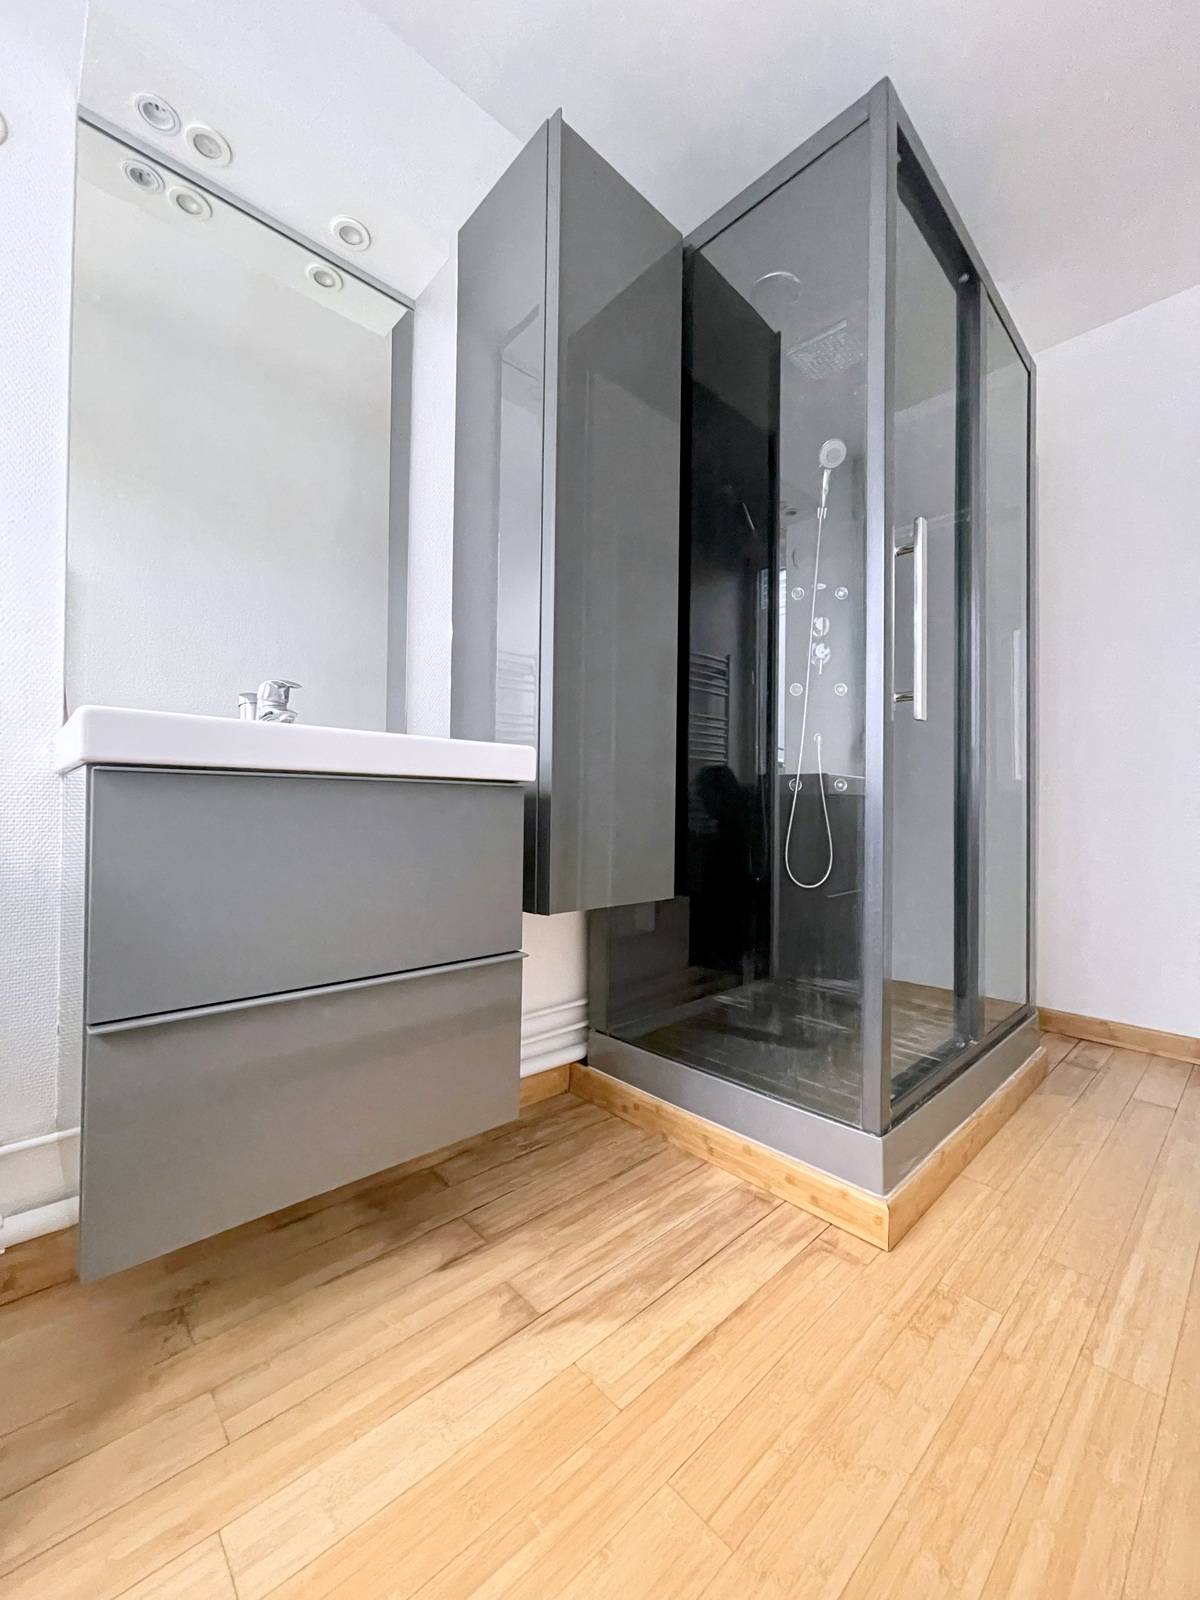 VENDU - EXCLUSIVITE - NEUDORF – Appartement 2 pièces 54 m² - Terrasse 16 m² - ascenseur accessible plain-pied - parking